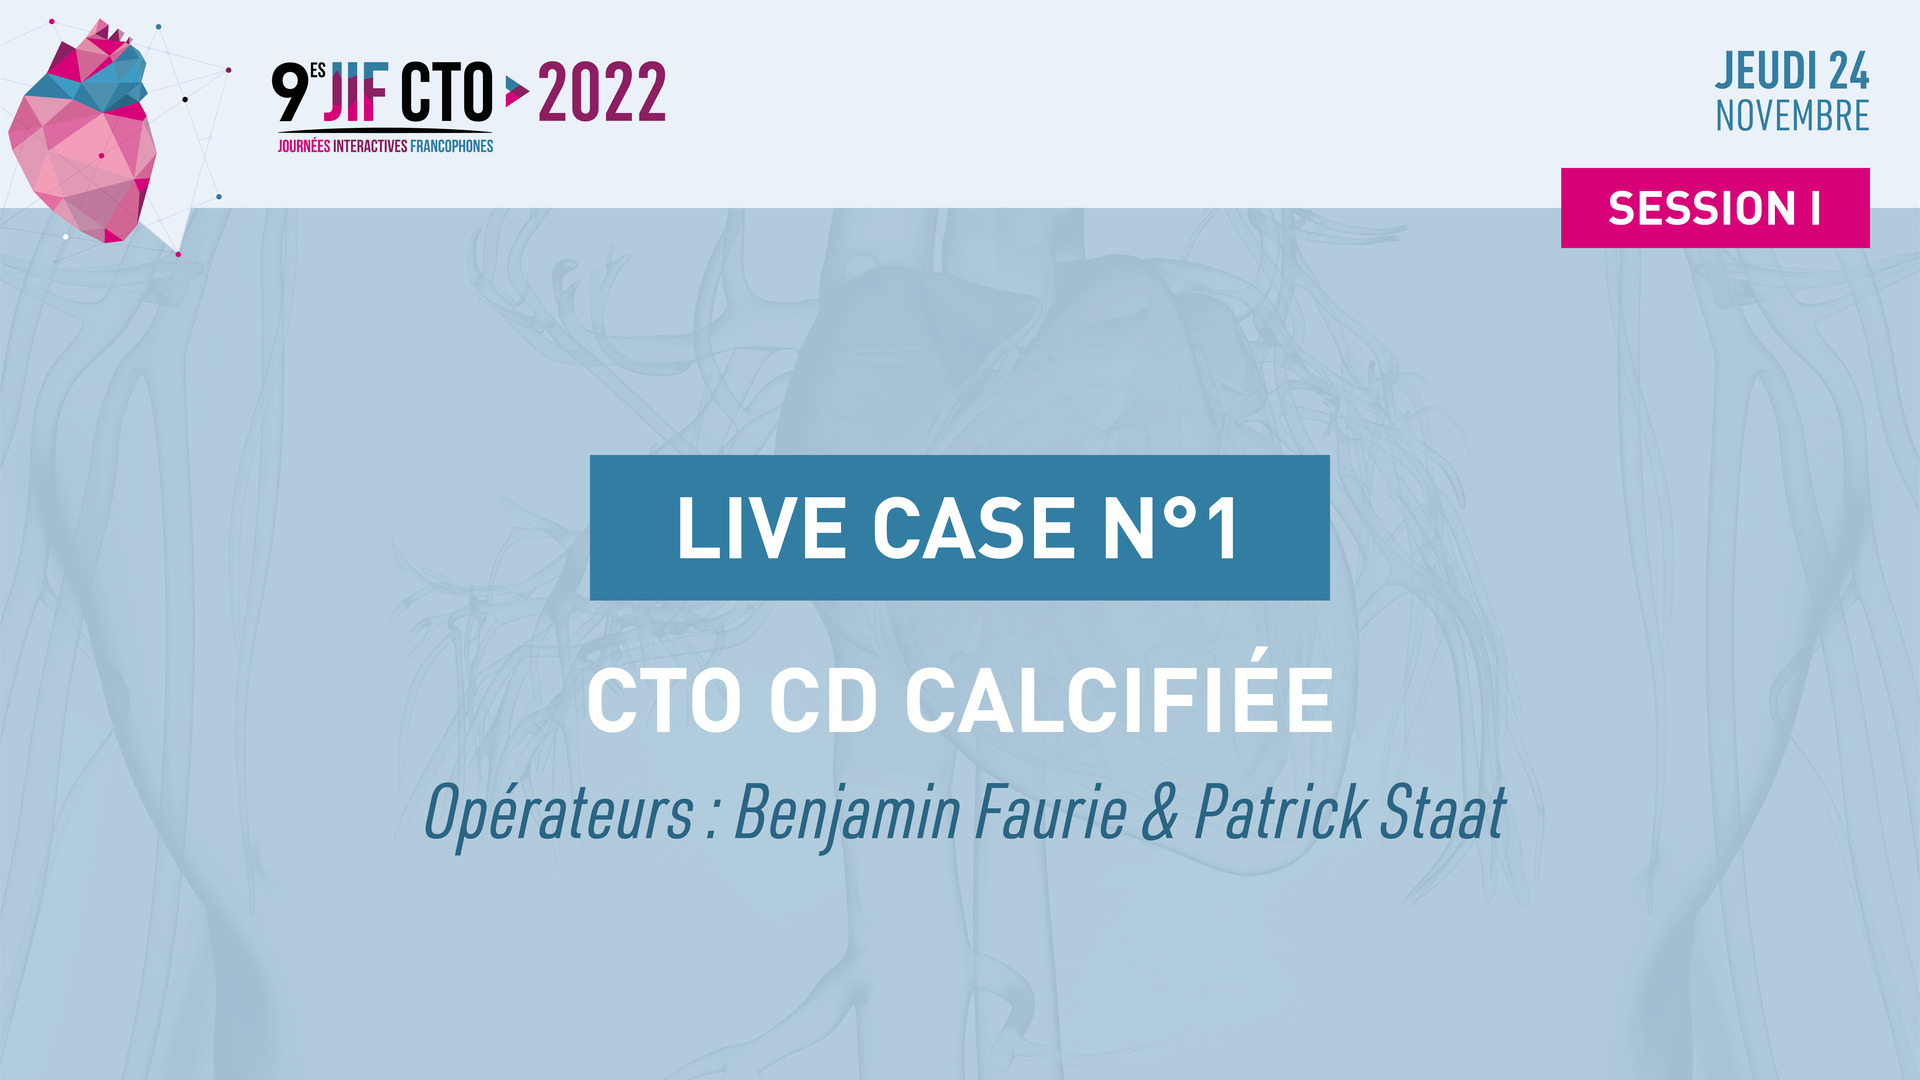 Live Case #2 - Double CTO CX & CD